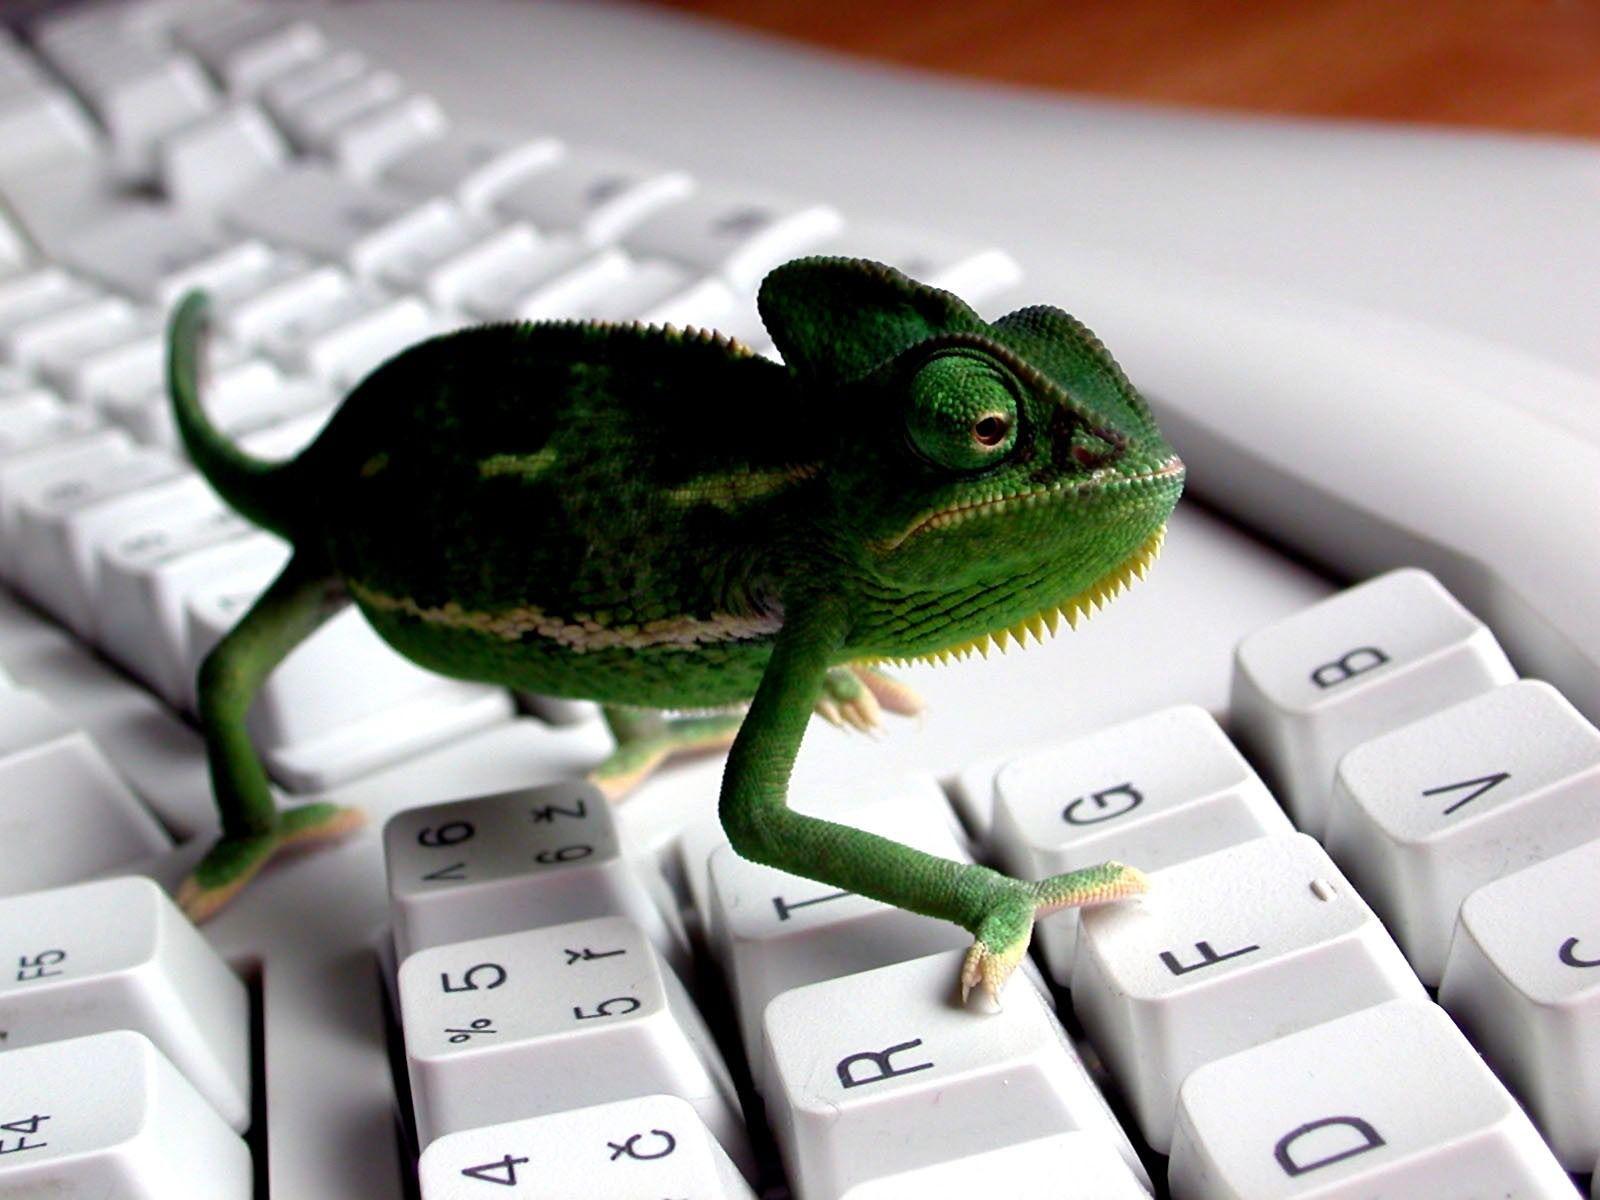 Keyboard Lizard Wallpaper 3D Characters 3D Wallpaper in jpg format